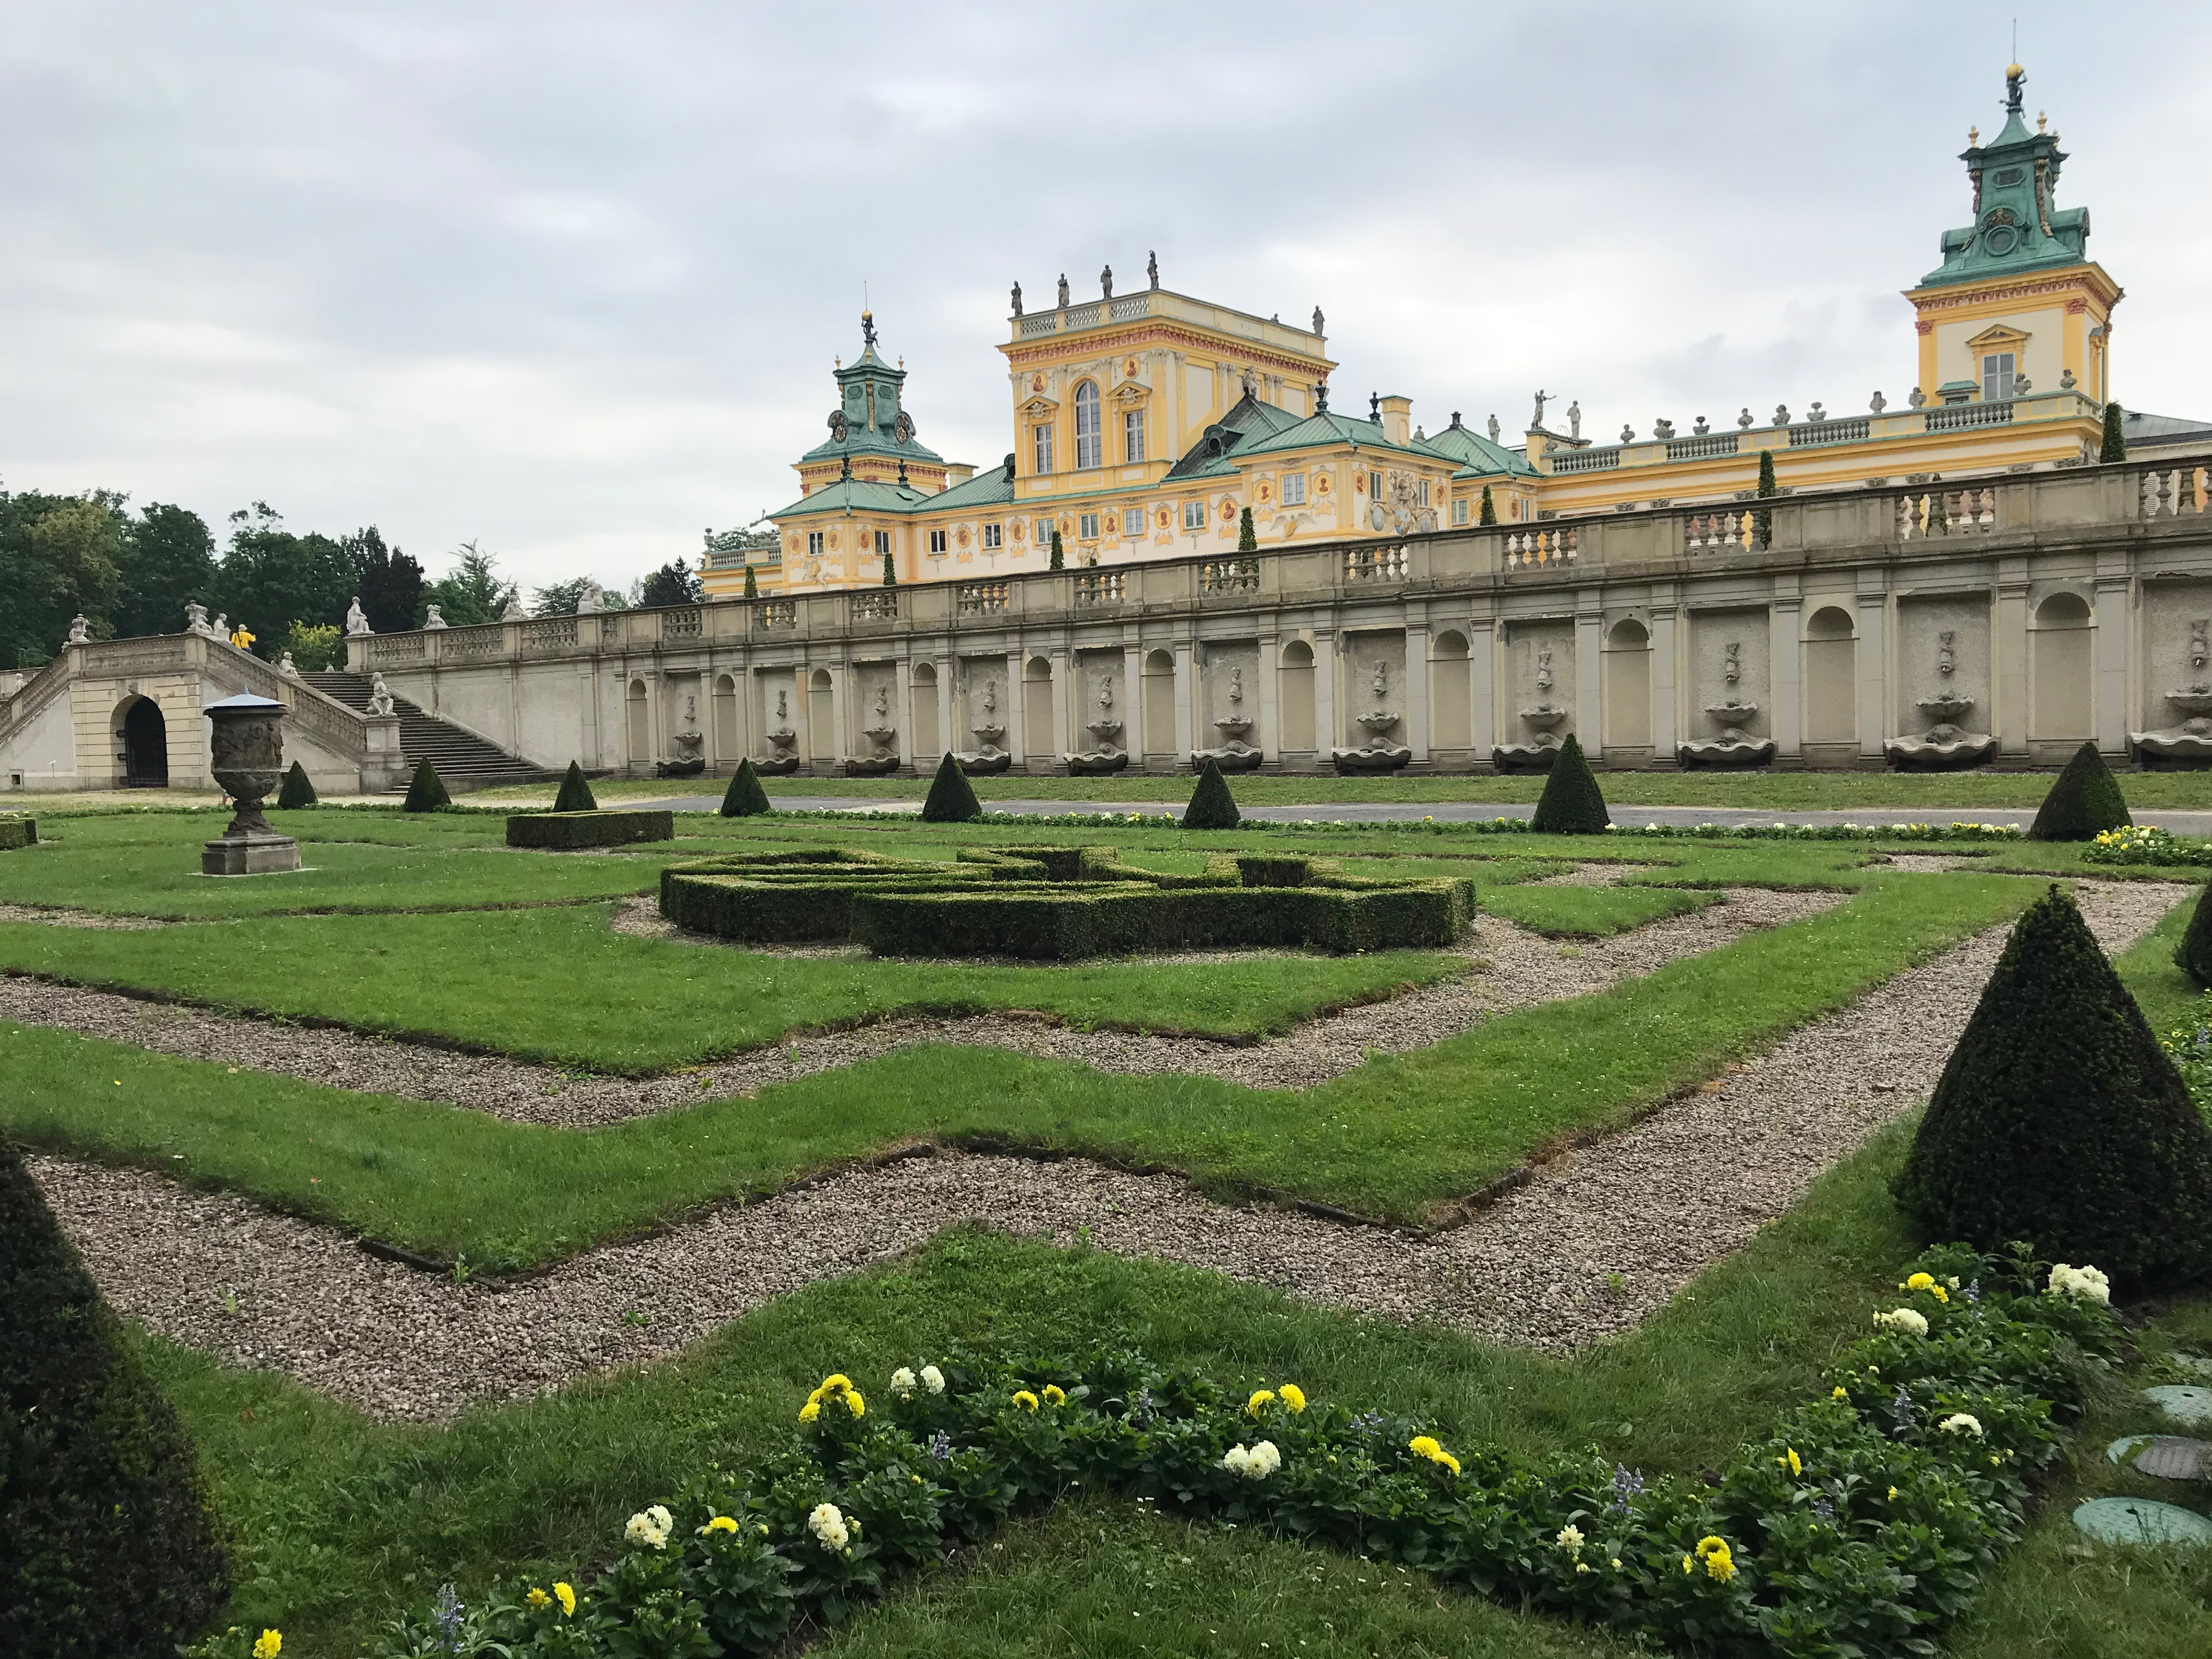 ポーランド08 ワルシャワ近郊の宮殿と公園を歩き 展望台から街を見渡す